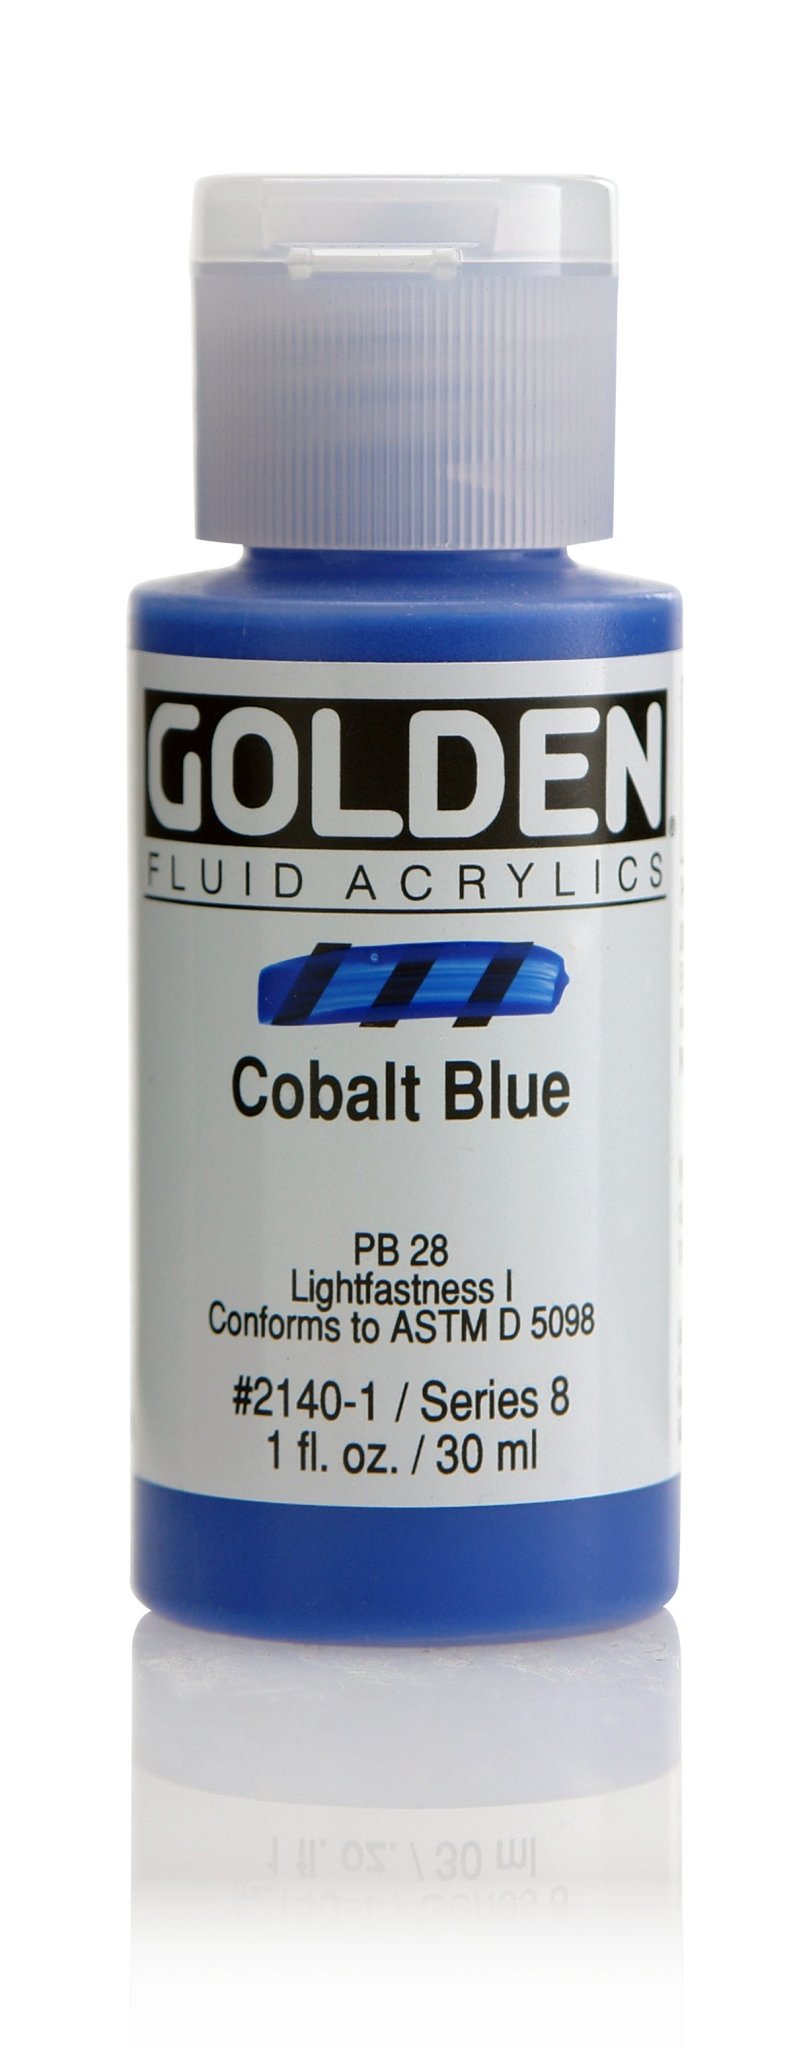 Golden Fluid Acrylics - Cobalt Blue - 30ml - Create A Little Magic (Pty) Ltd